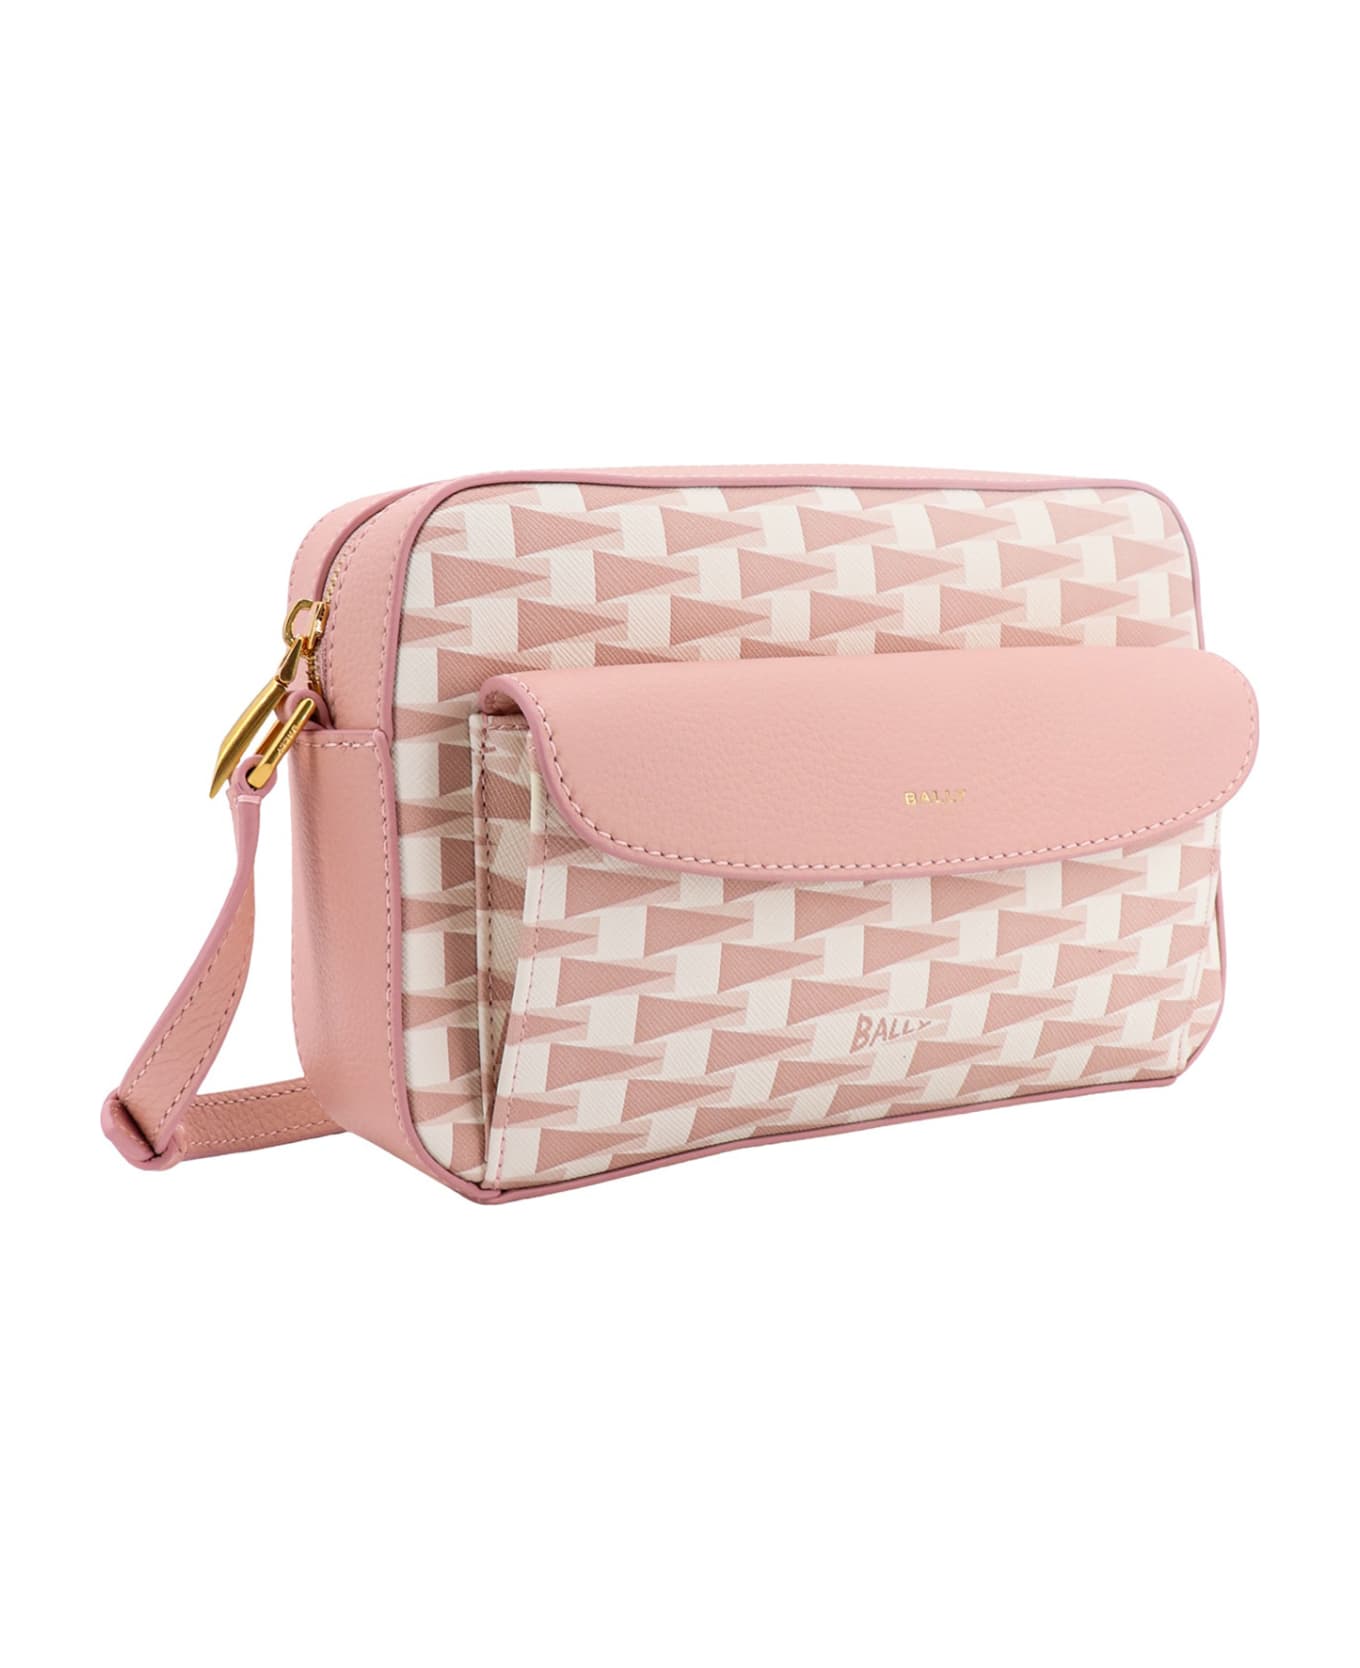 Bally Shoulder Bag - Pink